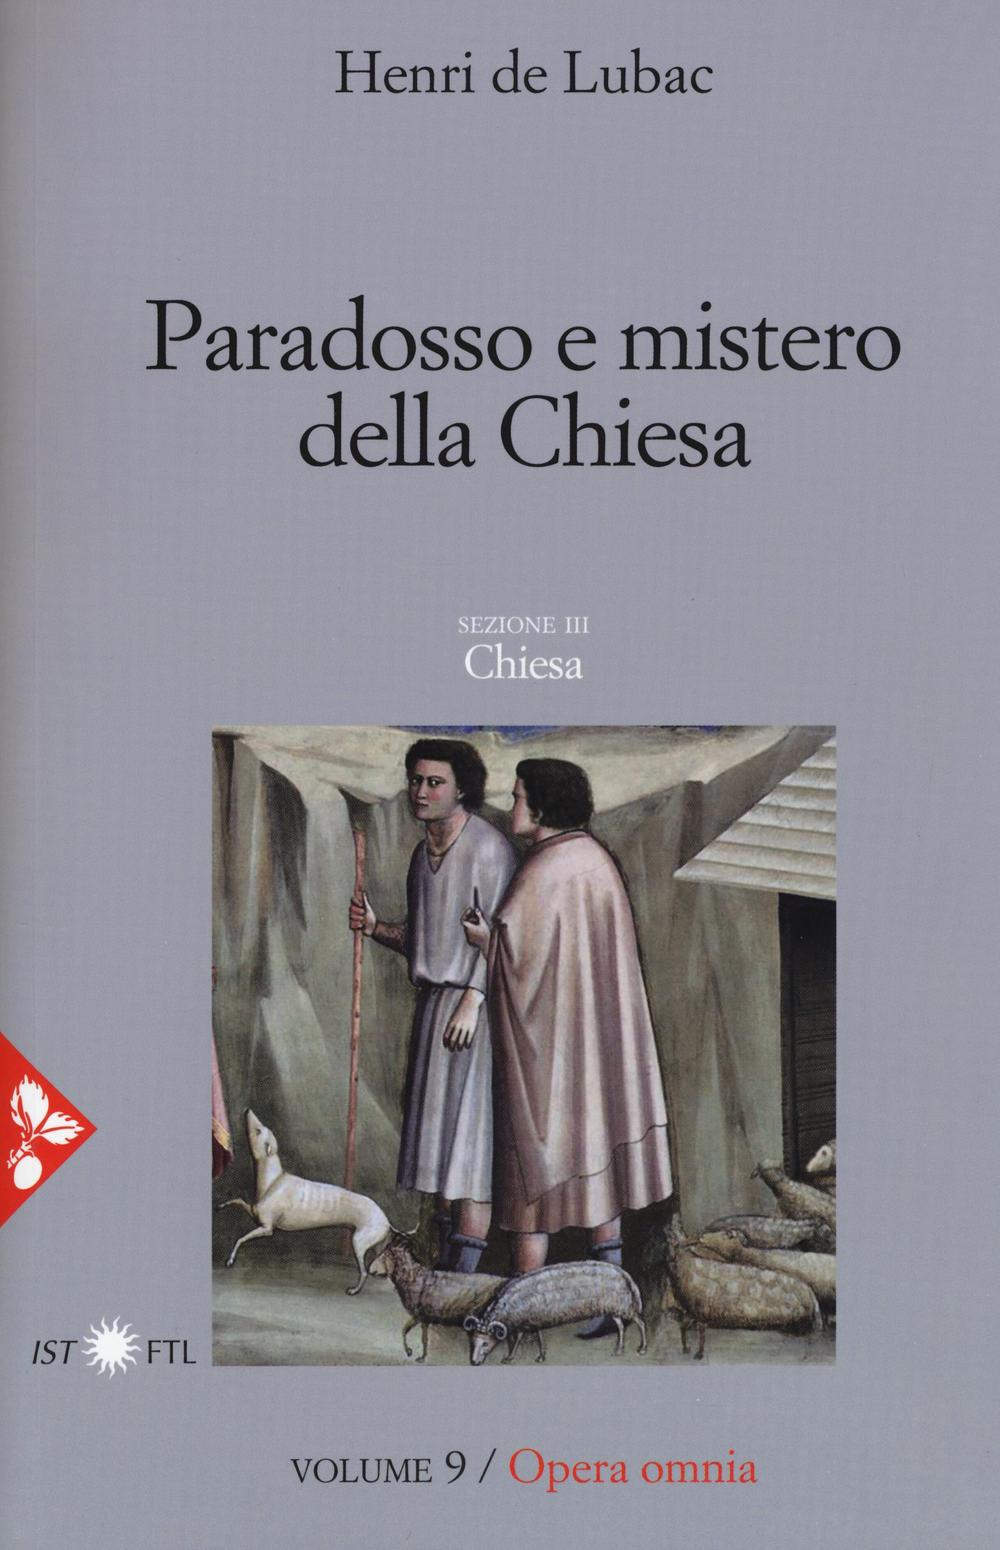 Opera omnia. Vol. 9: Paradosso e mistero della Chiesa. Chiesa